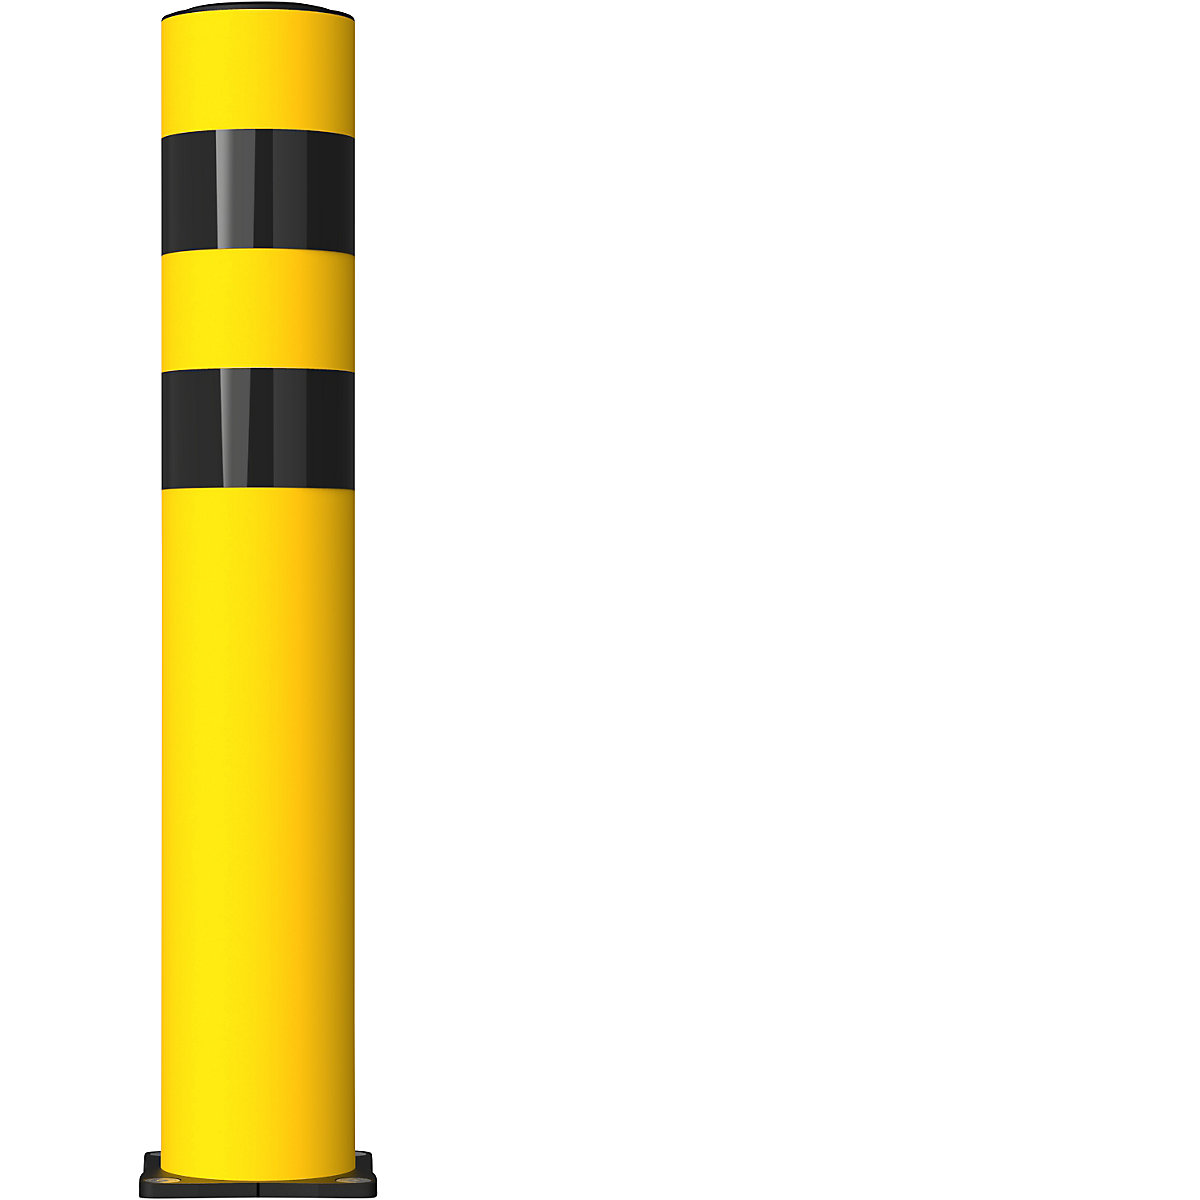 Ochranný protinárazový sloupek FLEX IMPACT, Ø 125 mm, výška 750 mm, žlutá, 2 reflexní pruhy, pozinkovaná spodní deska